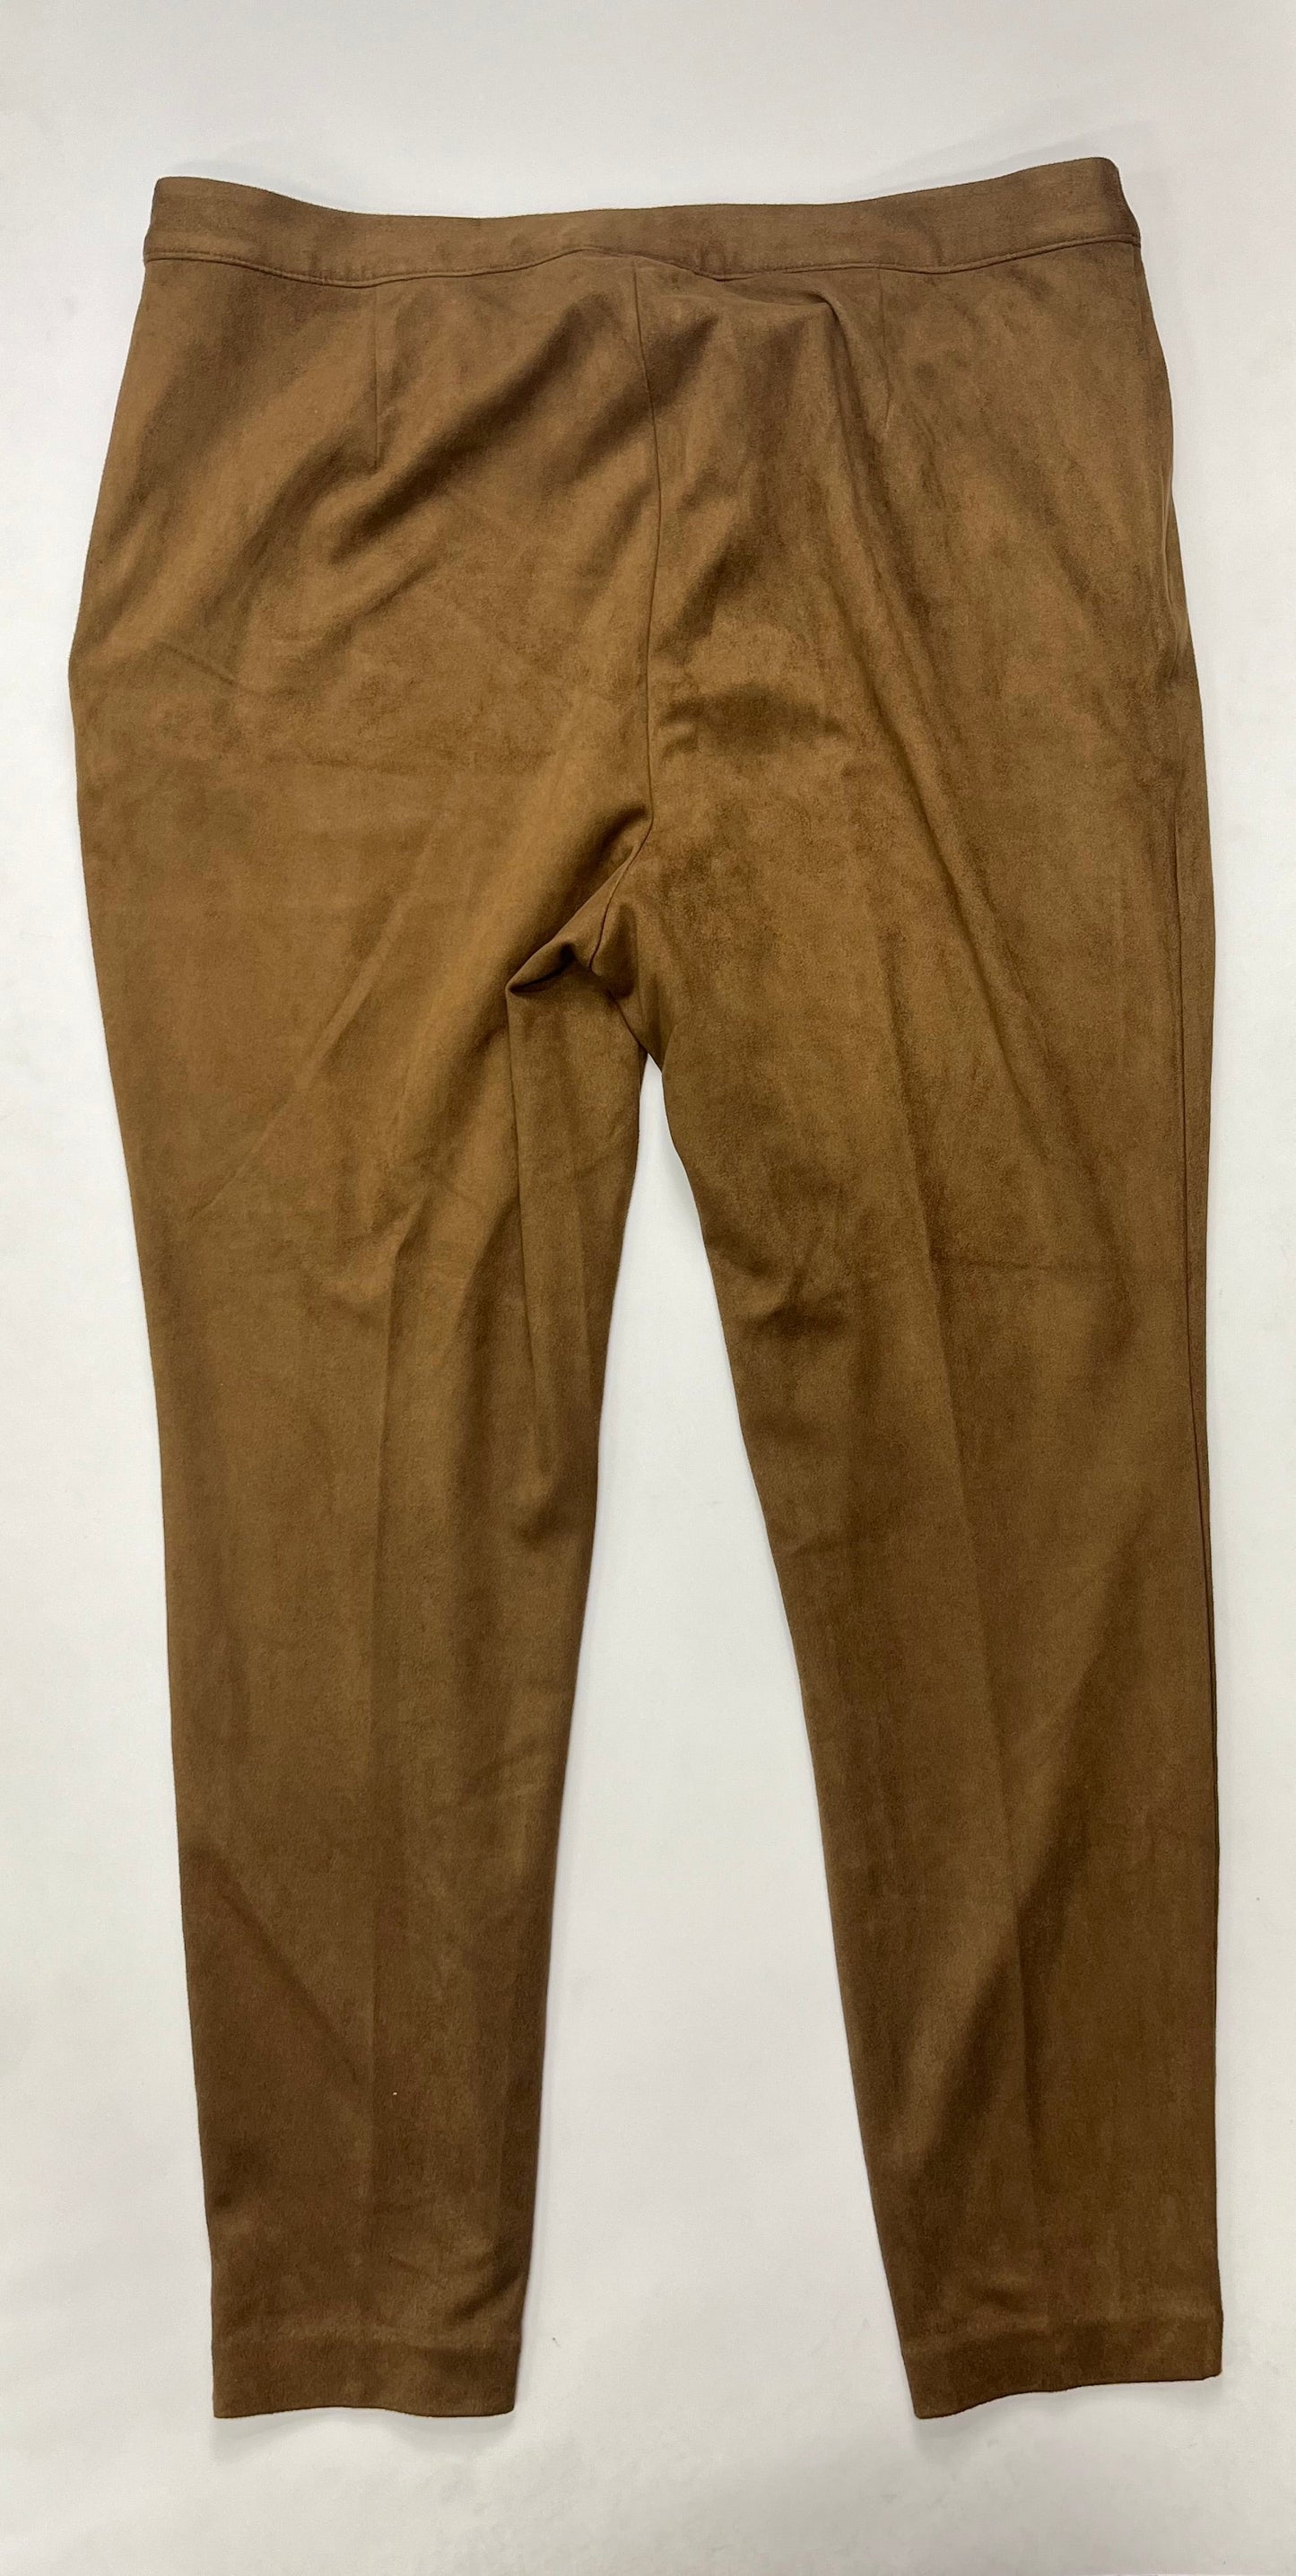 Brown Pants Work/dress J Jill, Size 18